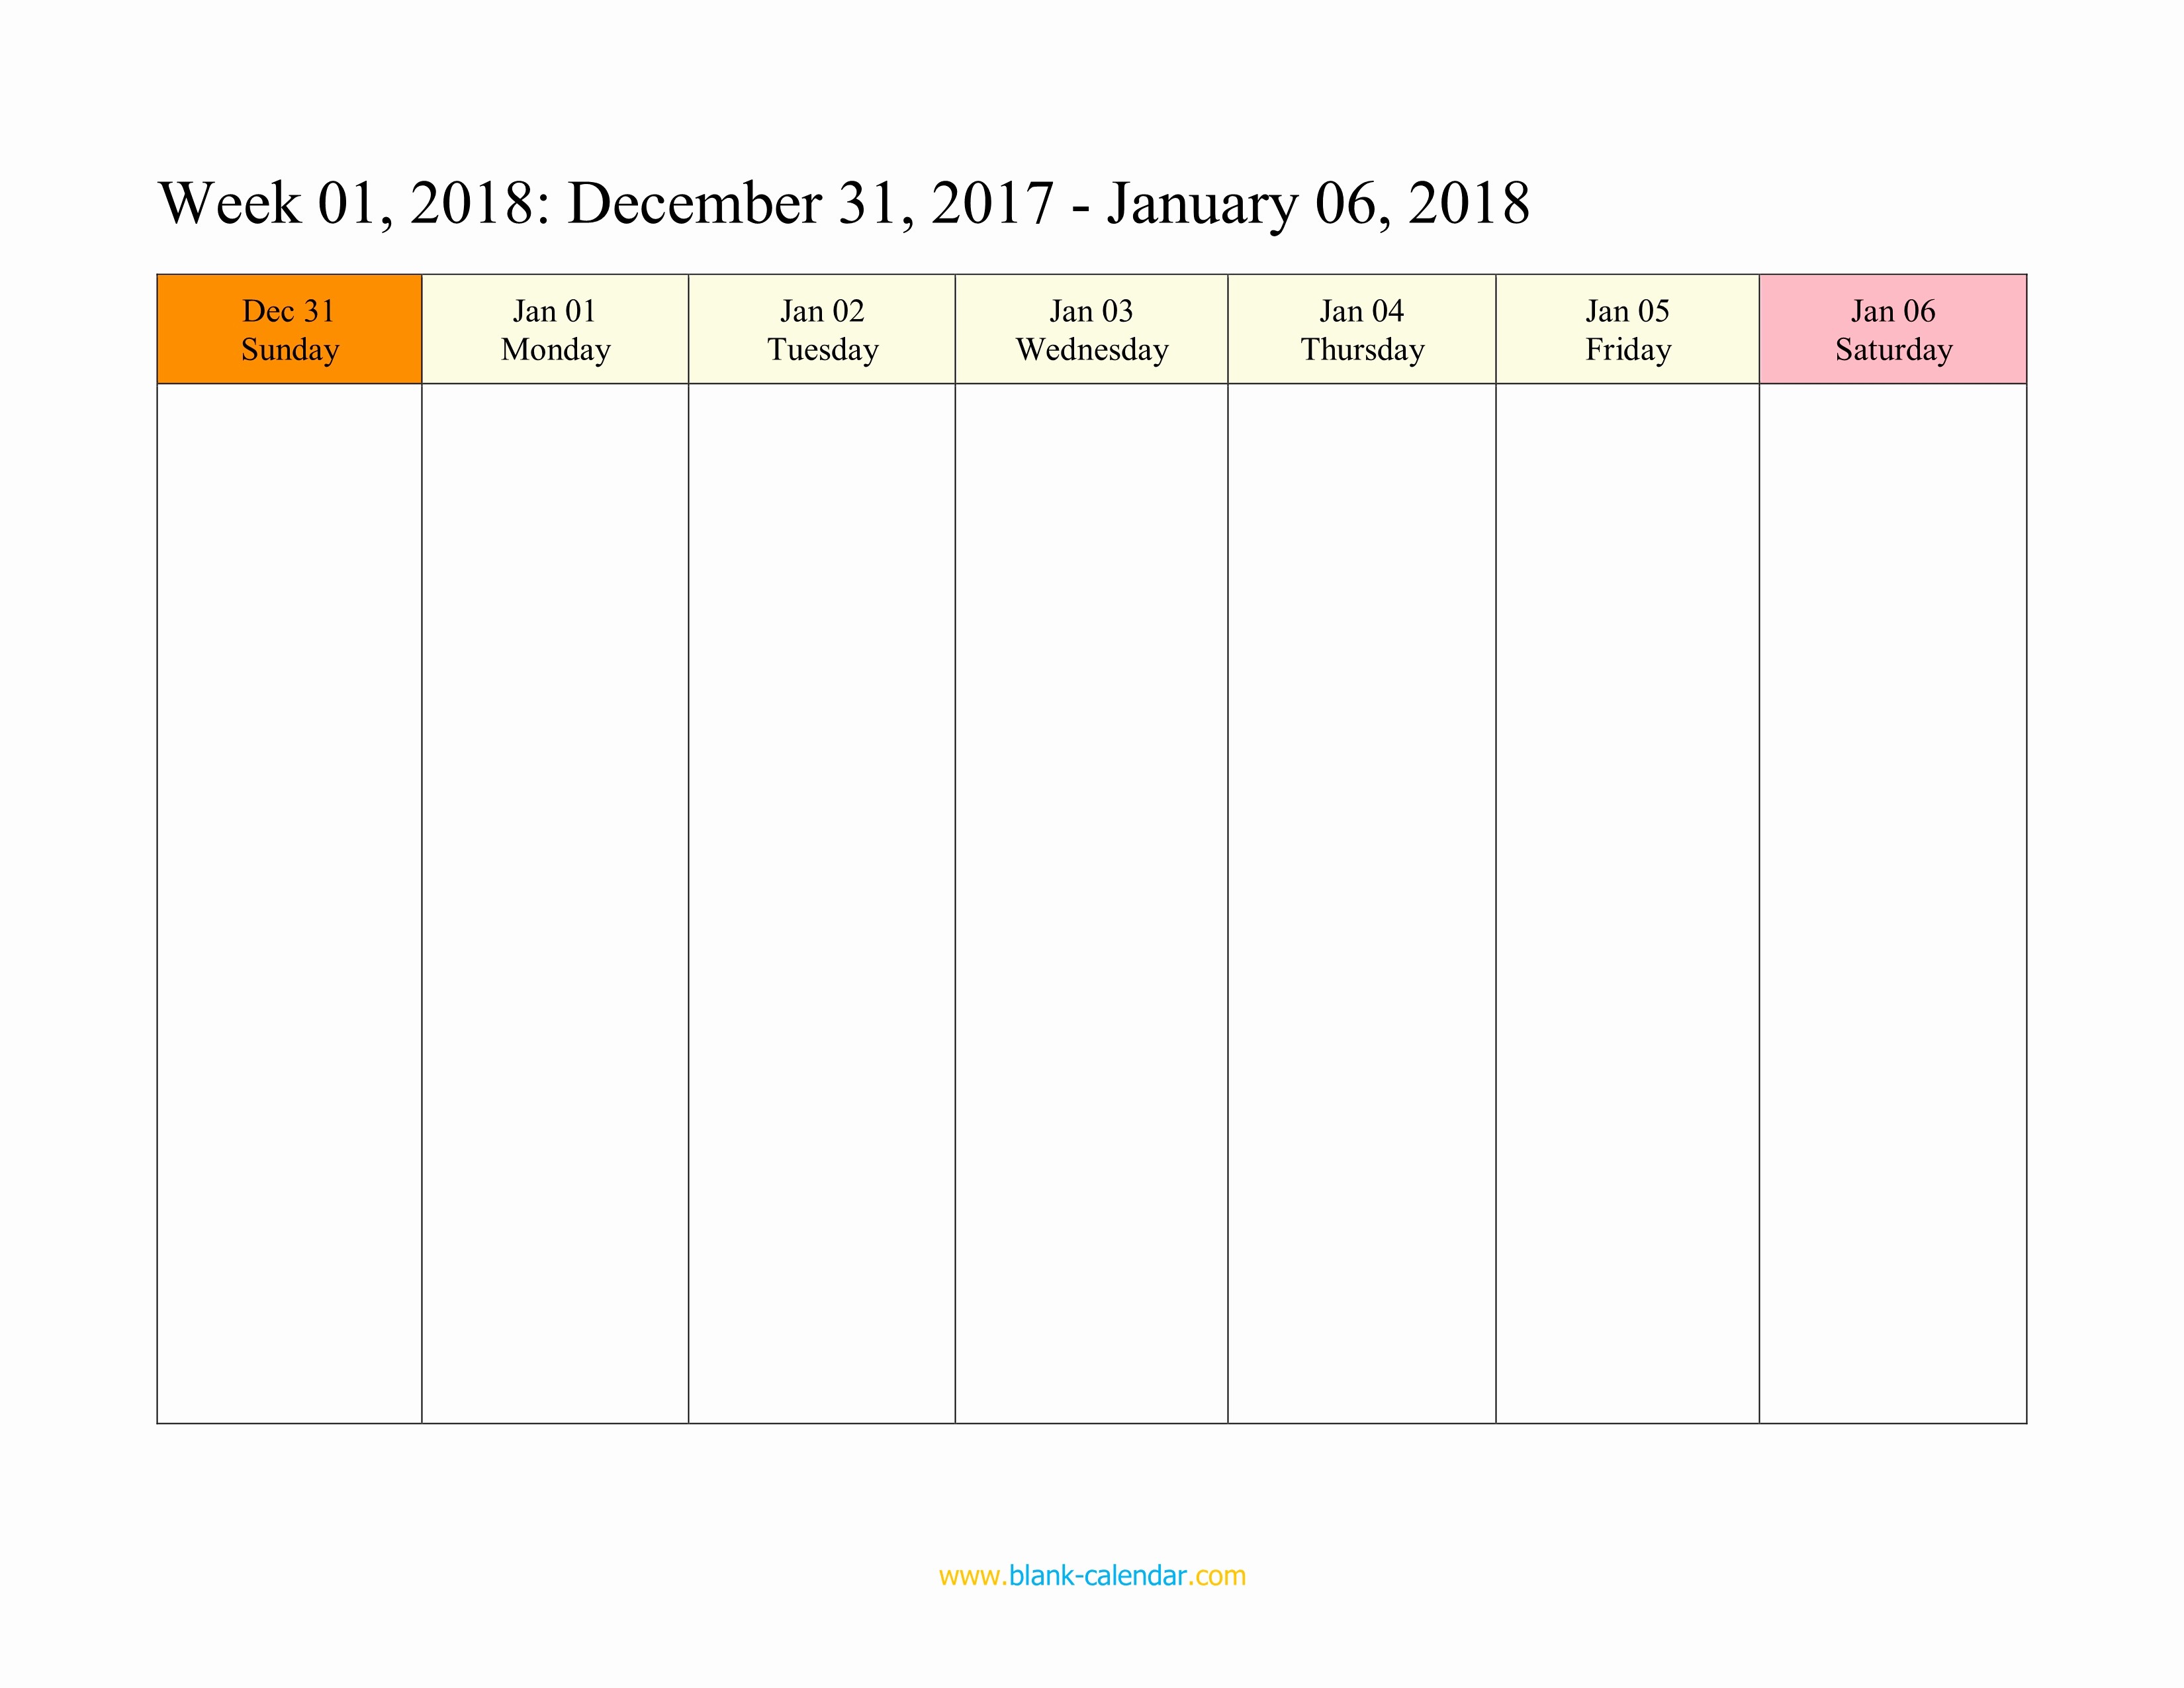 Week by Week Calendar Template Elegant Weekly Calendar 2018 Word Excel Pdf